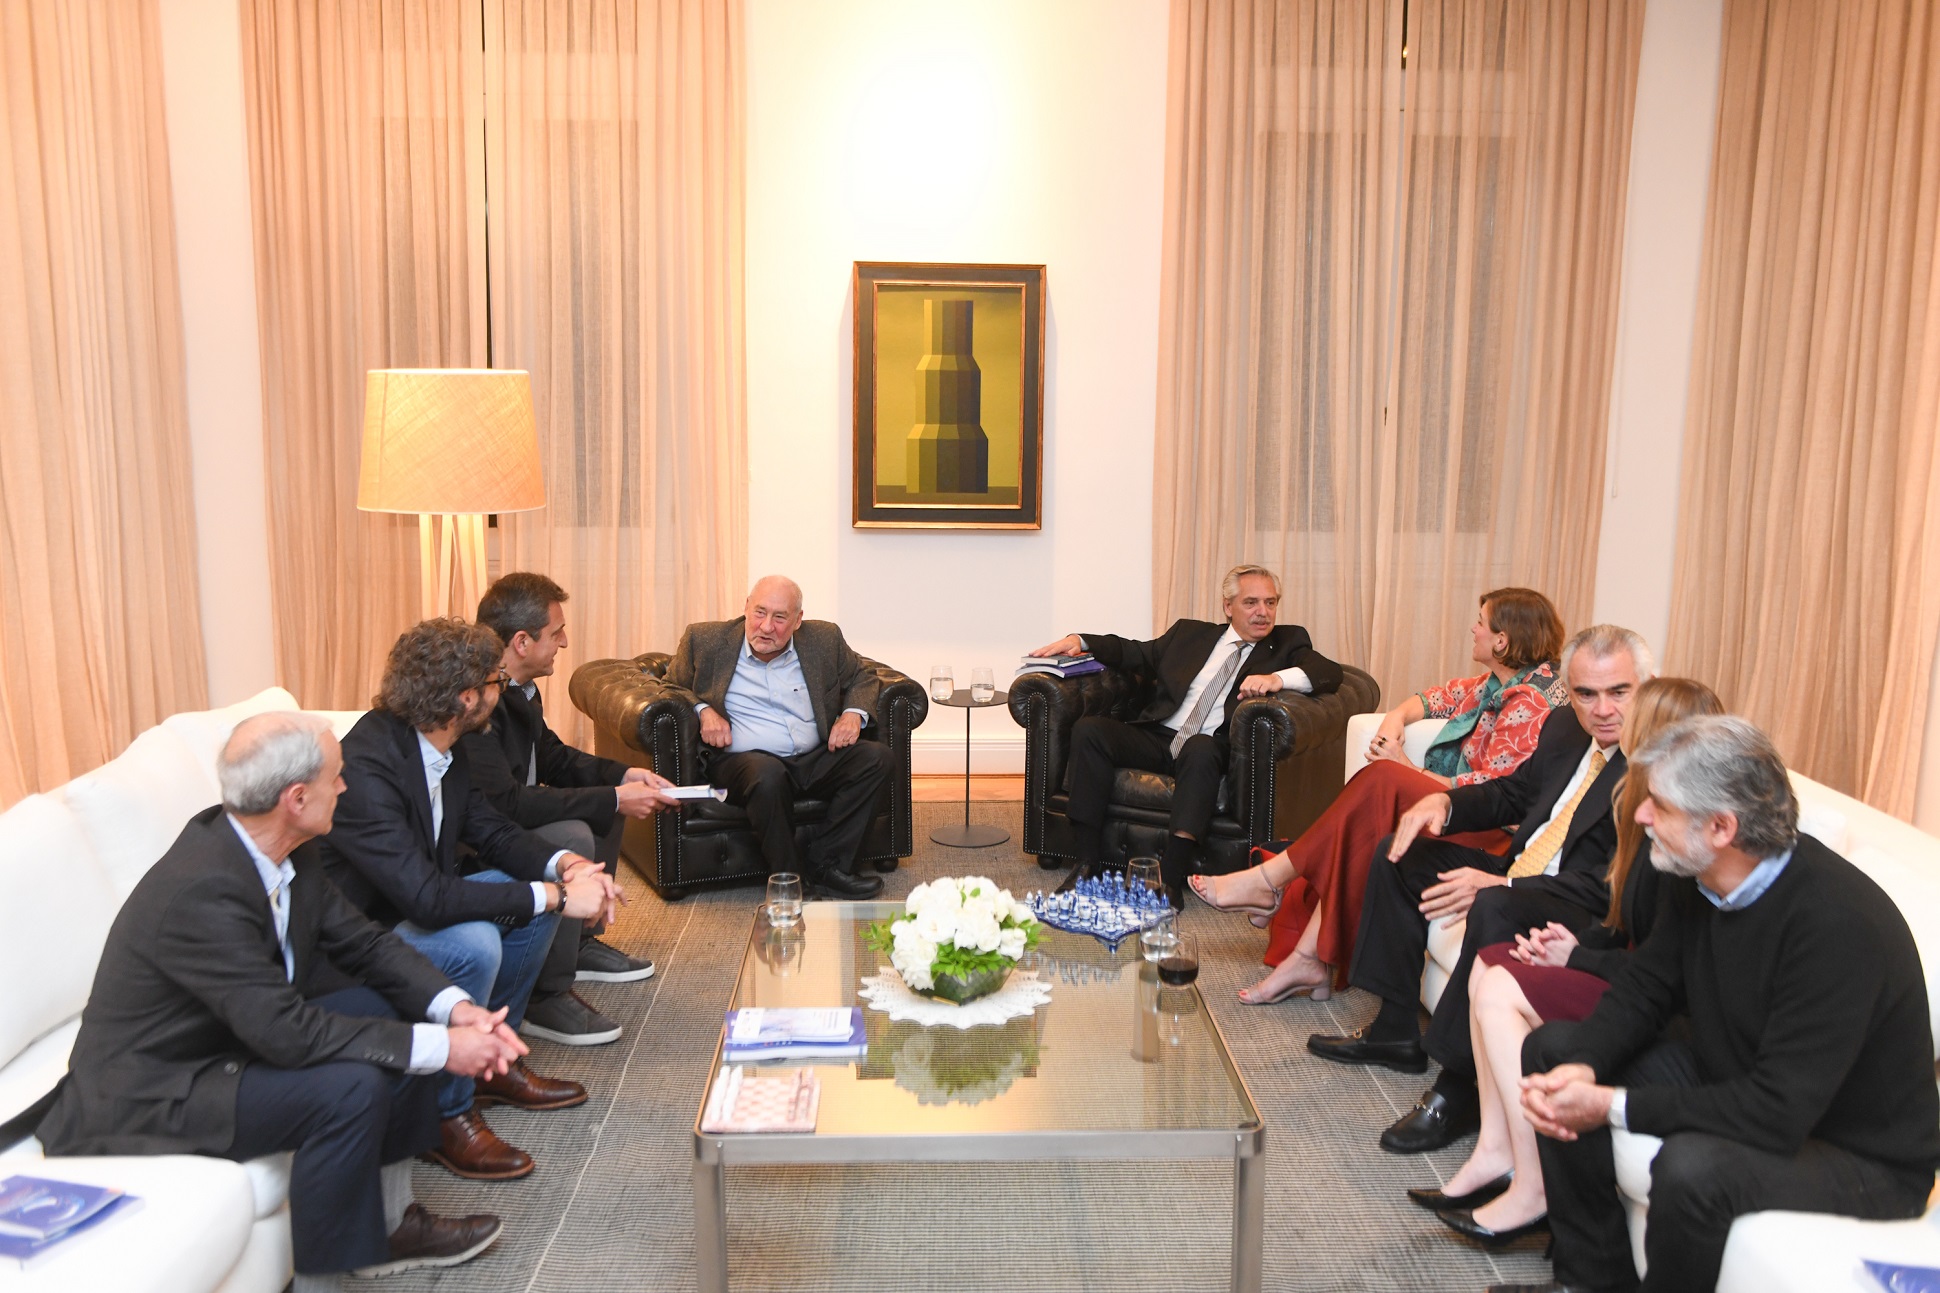 El presidente recibió a los economistas Joseph Stiglitz y Mariana Mazzucato y a otros participantes de la Cepal